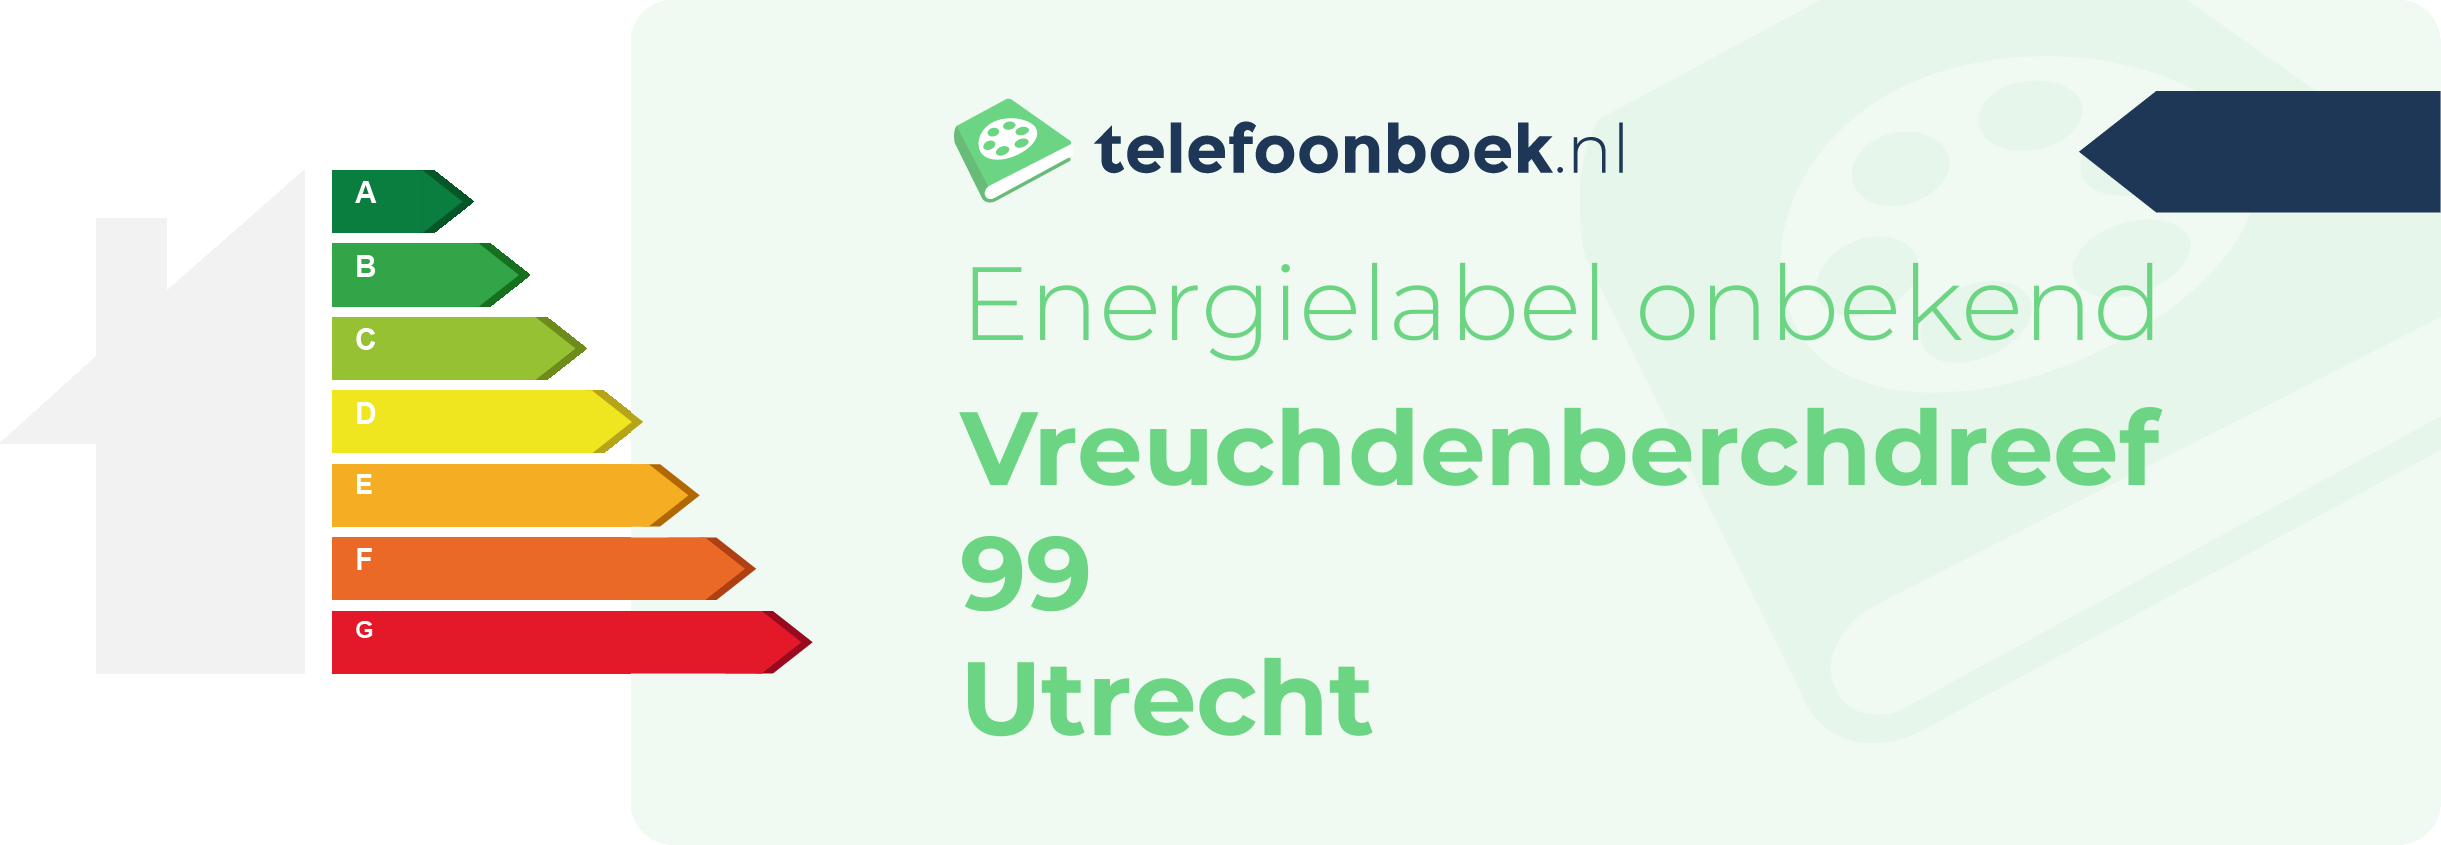 Energielabel Vreuchdenberchdreef 99 Utrecht